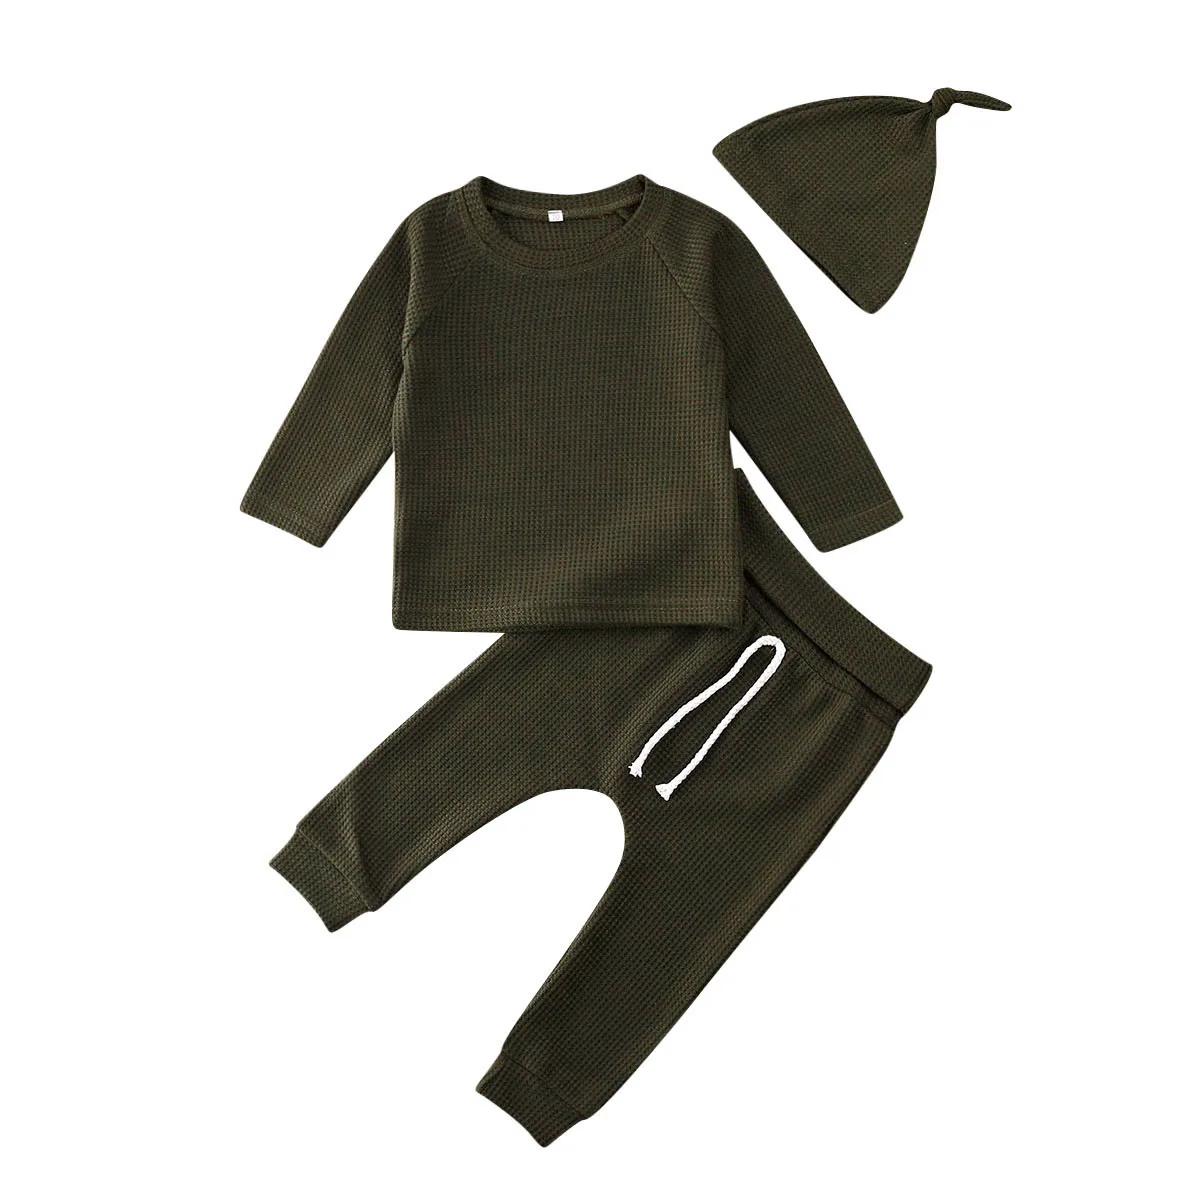 Комплект из 3 предметов, топы для новорожденных и маленьких девочек, пуловер-комбинезон, штаны, леггинсы, шапка, хлопковая одежда, осенняя теплая одежда с длинными рукавами для детей 0-24 месяцев - Цвет: Зеленый